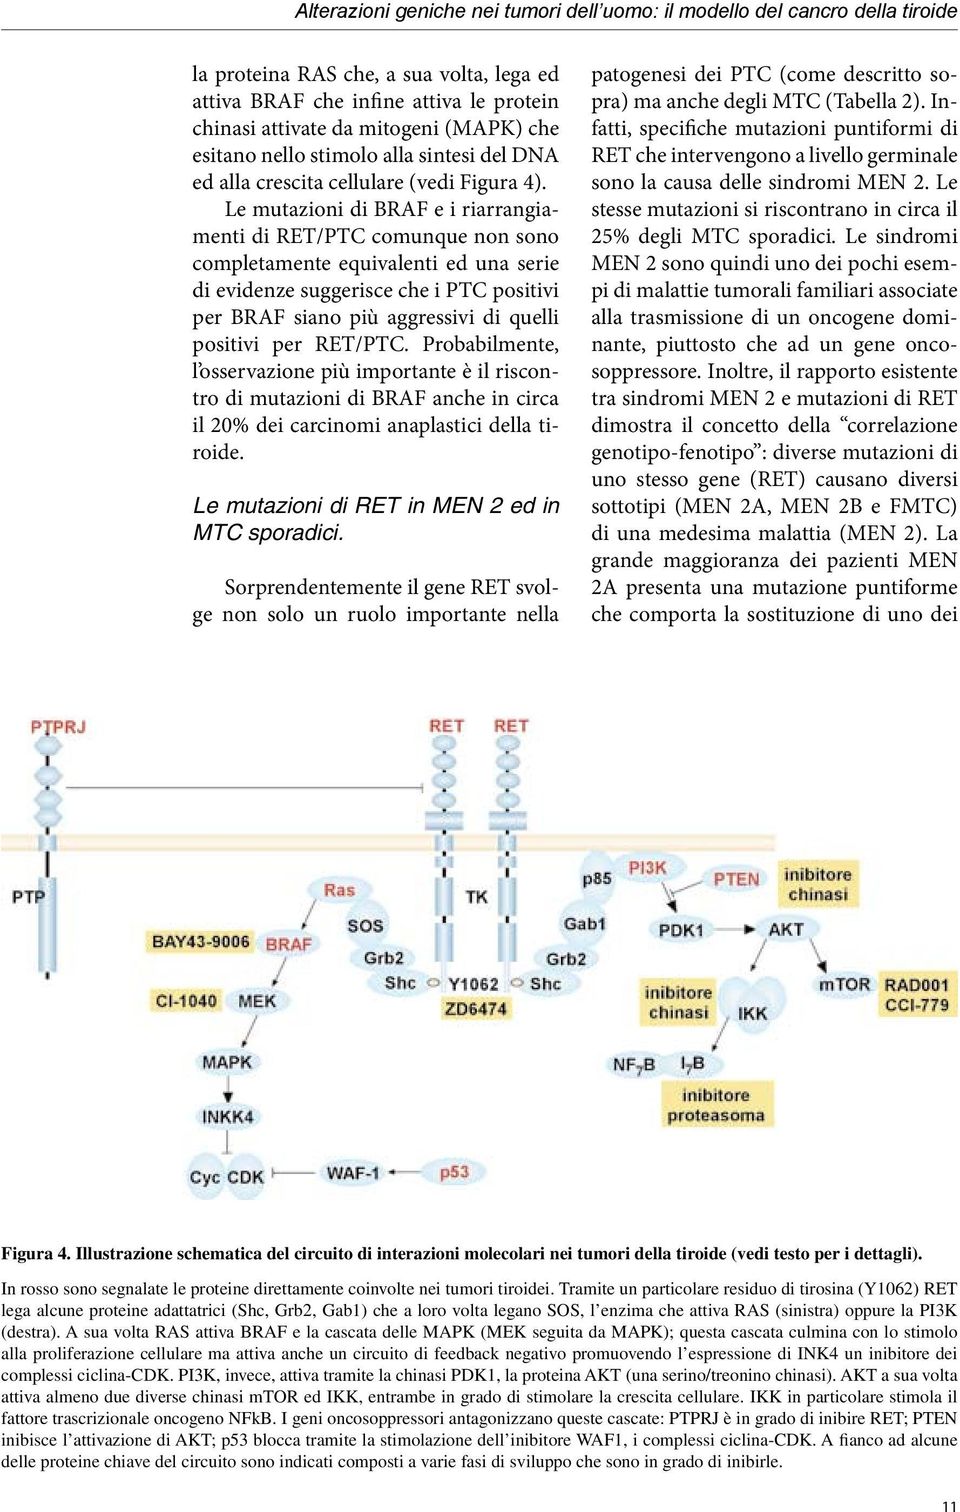 Le mutazioni di BRAF e i riarrangiamenti di RET/PTC comunque non sono completamente equivalenti ed una serie di evidenze suggerisce che i PTC positivi per BRAF siano più aggressivi di quelli positivi